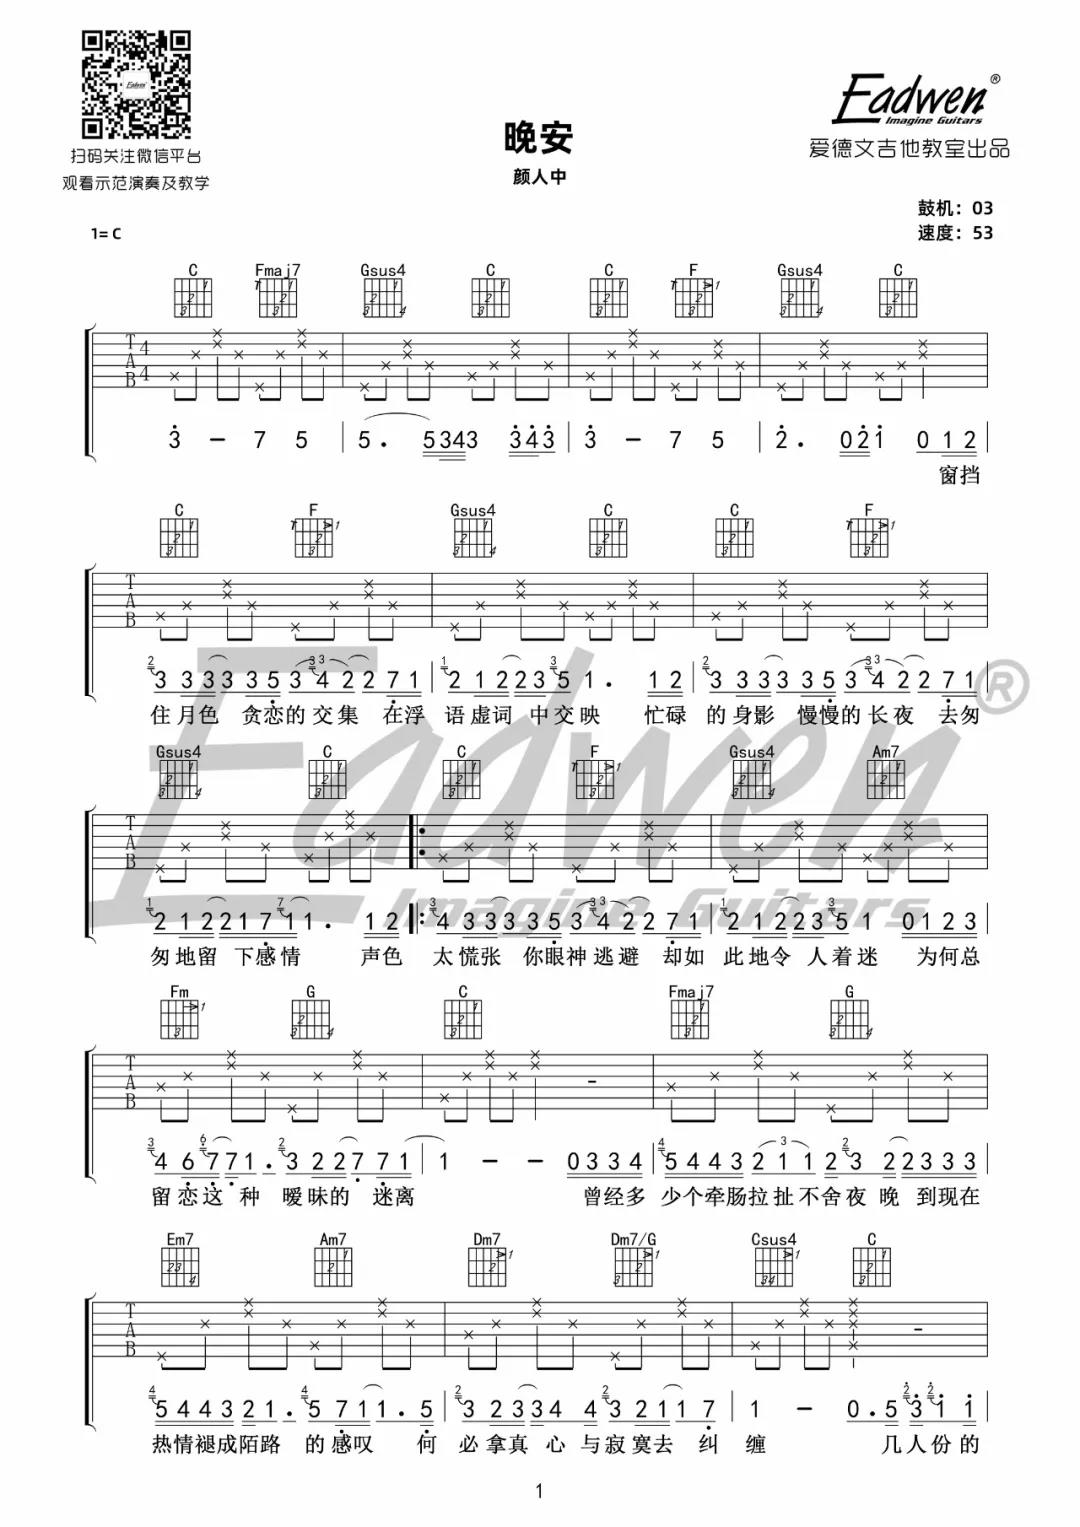 颜人中《晚安》吉他谱(C调)-Guitar Music Score